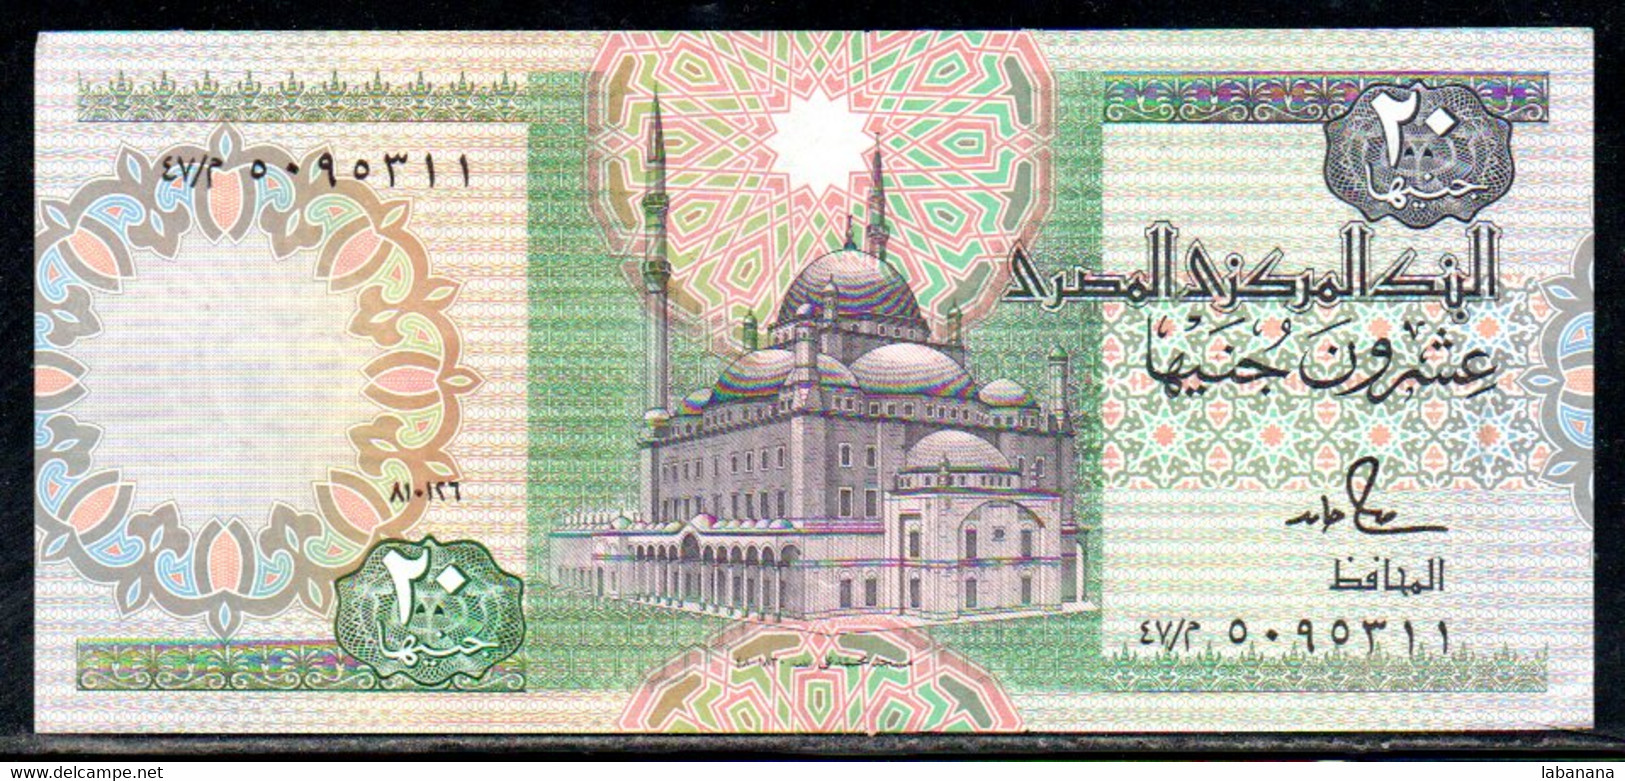 659-Egypte 20 1986/87 Pounds Sig.18 - Egypte